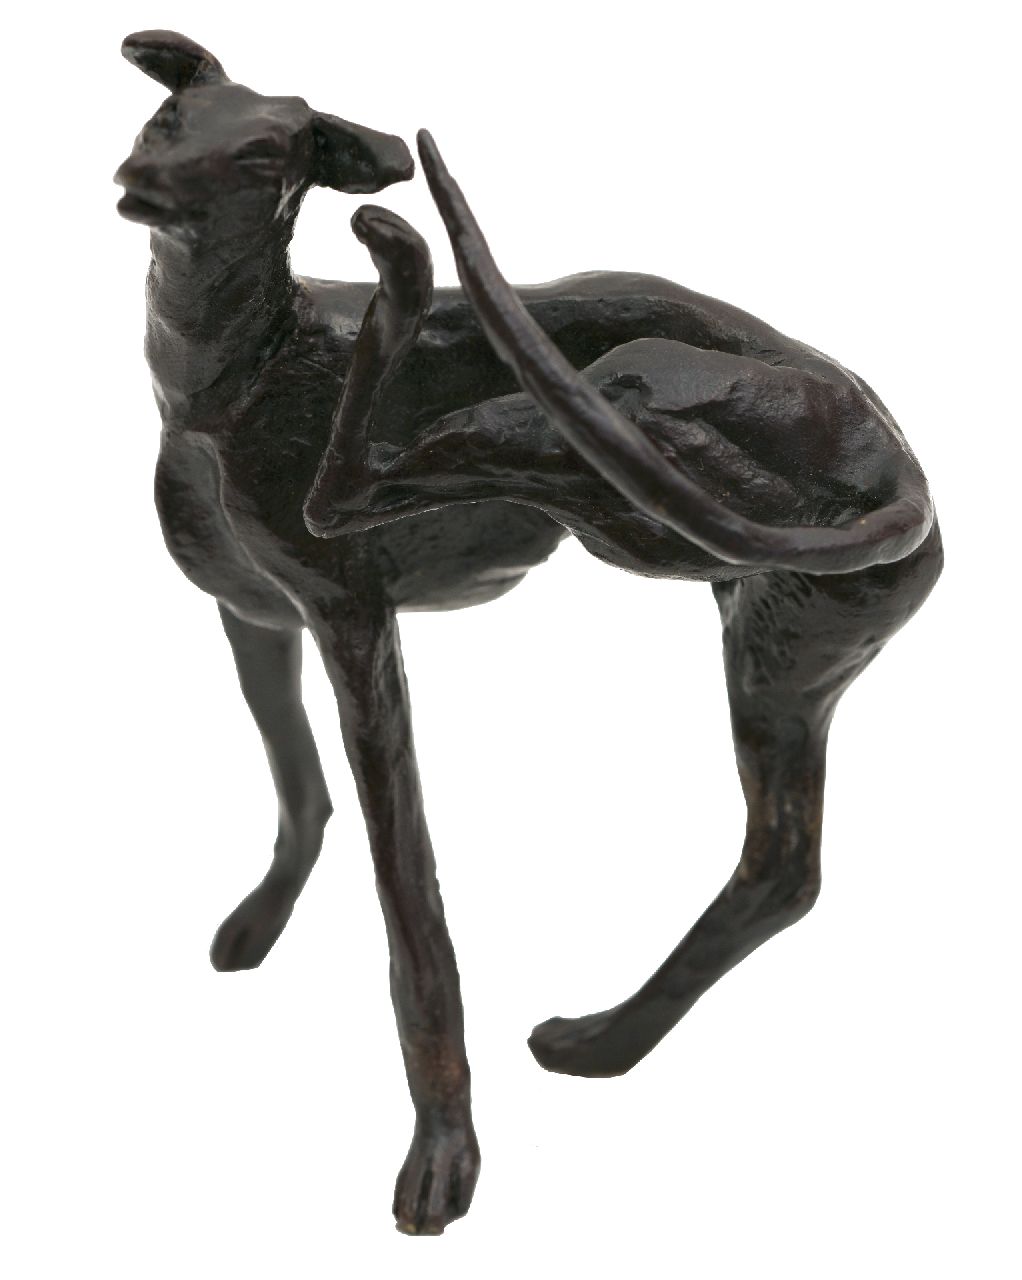 Harriët Glen | Hazewindhond, brons, 10,3 x 8,0 cm, gesigneerd op rechter achterpoot